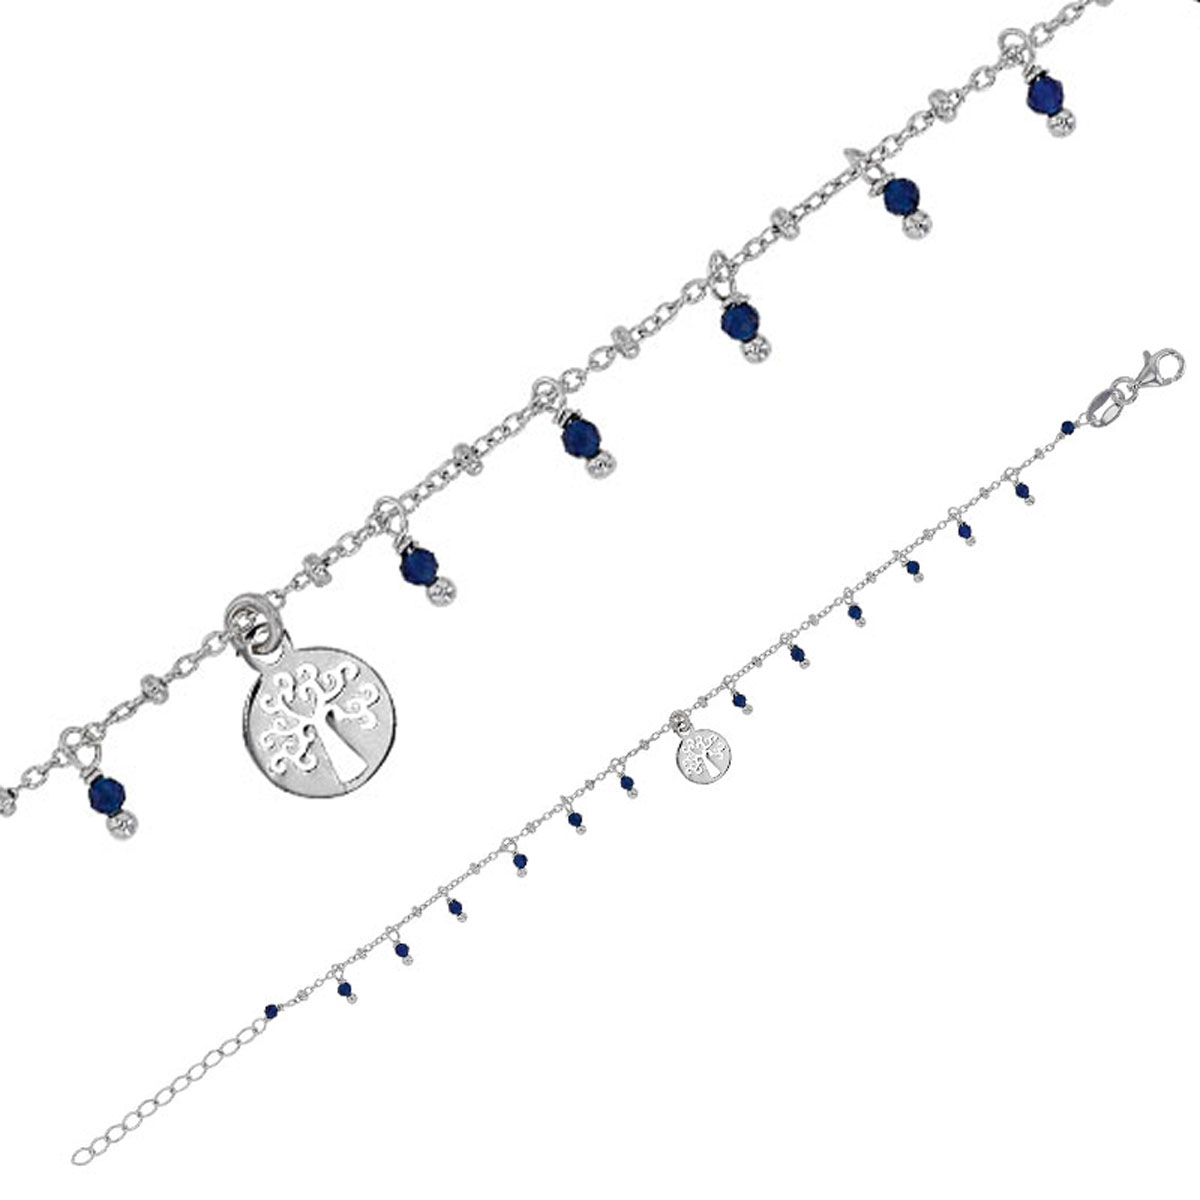 Bracelet Argent artisanal \'Cléopatra\' marine argenté (rhodié) - 8 mm (arbre de vie) - [R4977]